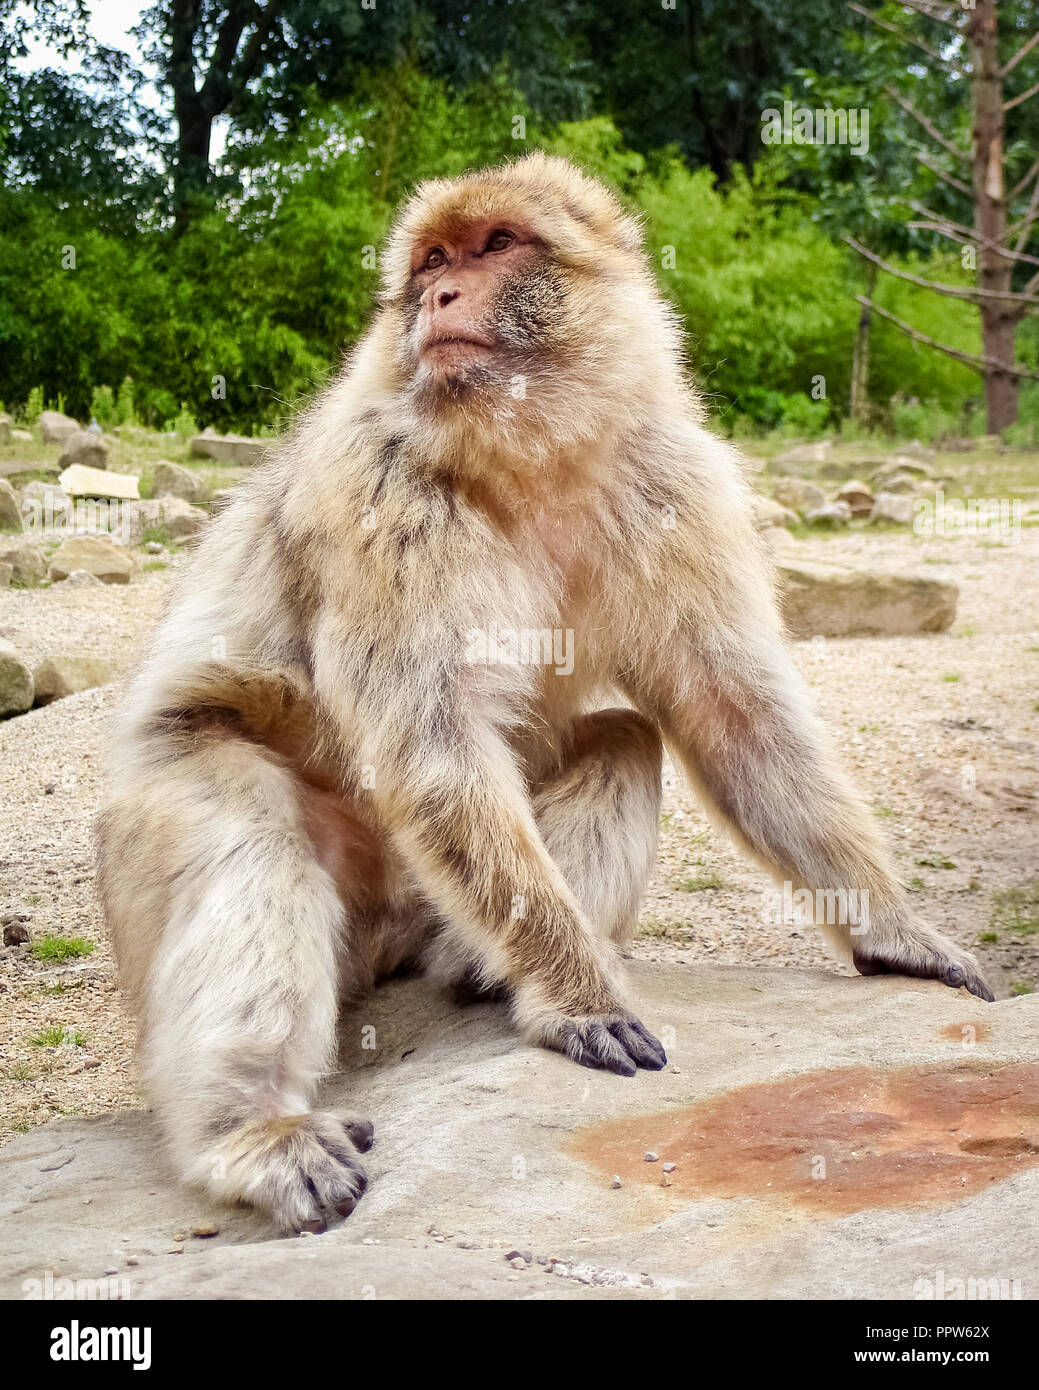 Ein barbary Macaque (oder Barbay ape oder magot). Es ist eine Pflanzenart aus der Gattung der Makaken, die einzigartig durch ihre Verbreitung außerhalb von Asien Stockfoto